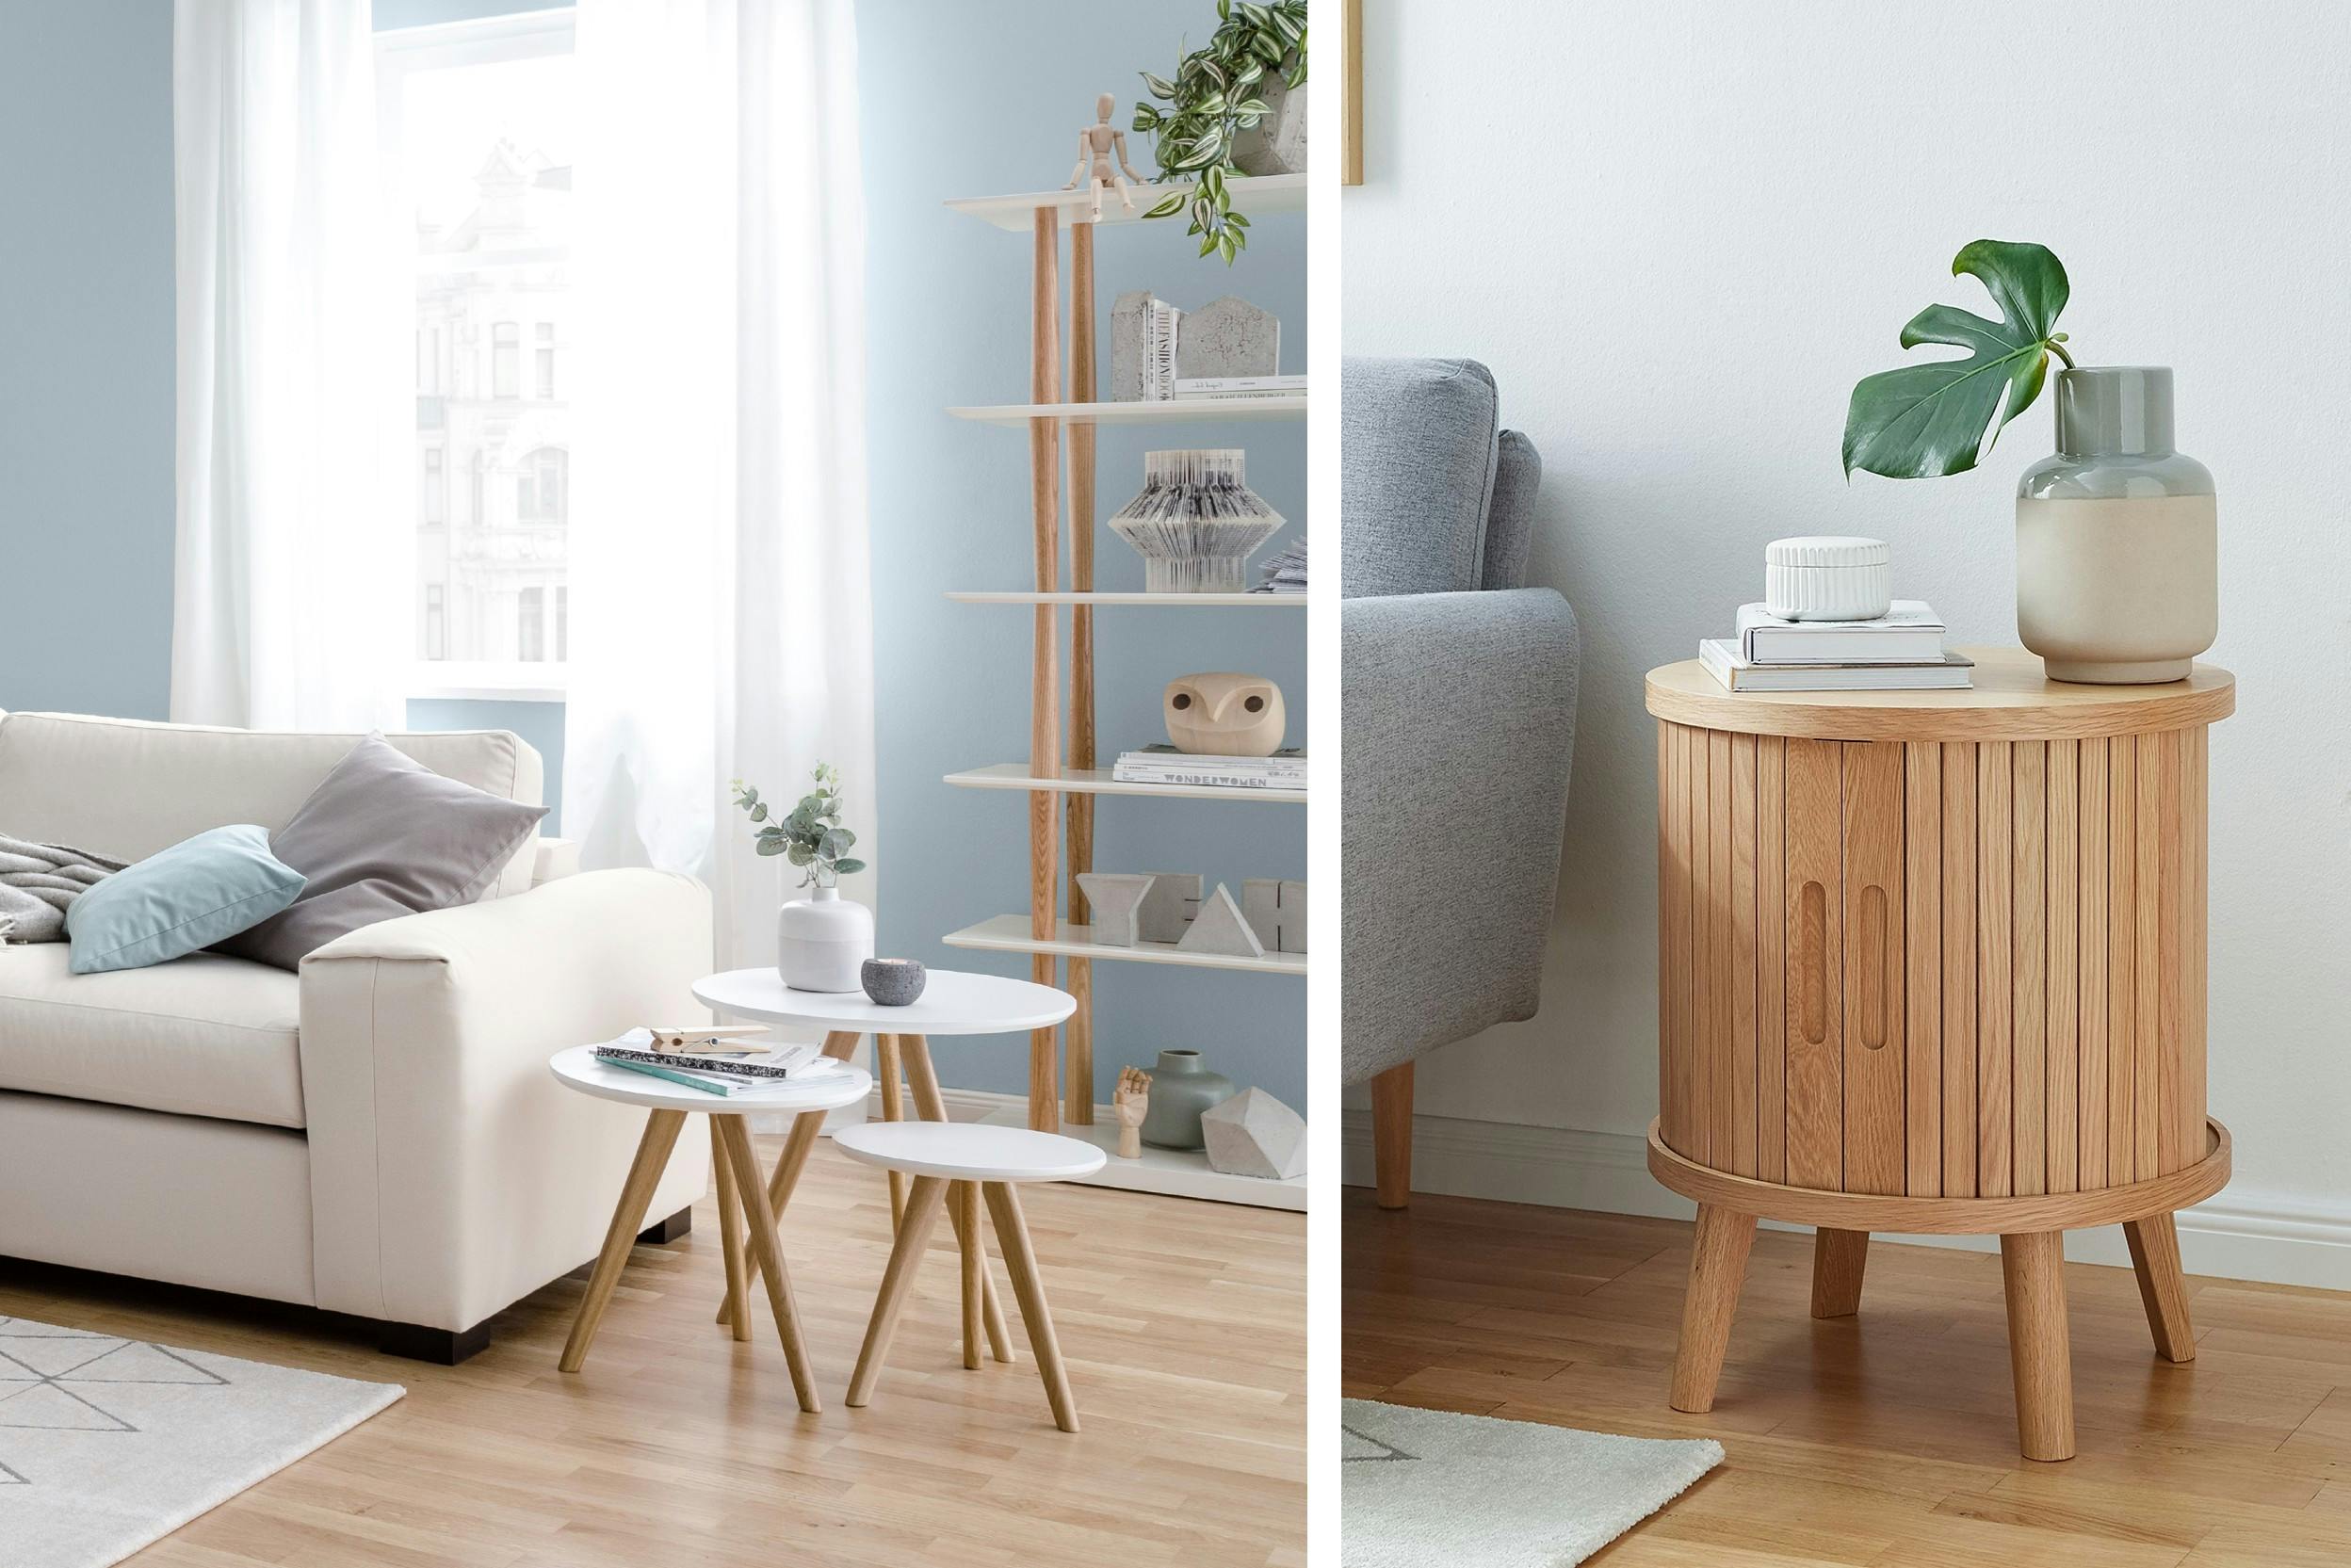 Combos de deux photos de deux salons dont certains meubles sont de petite taille, comme les tables basses